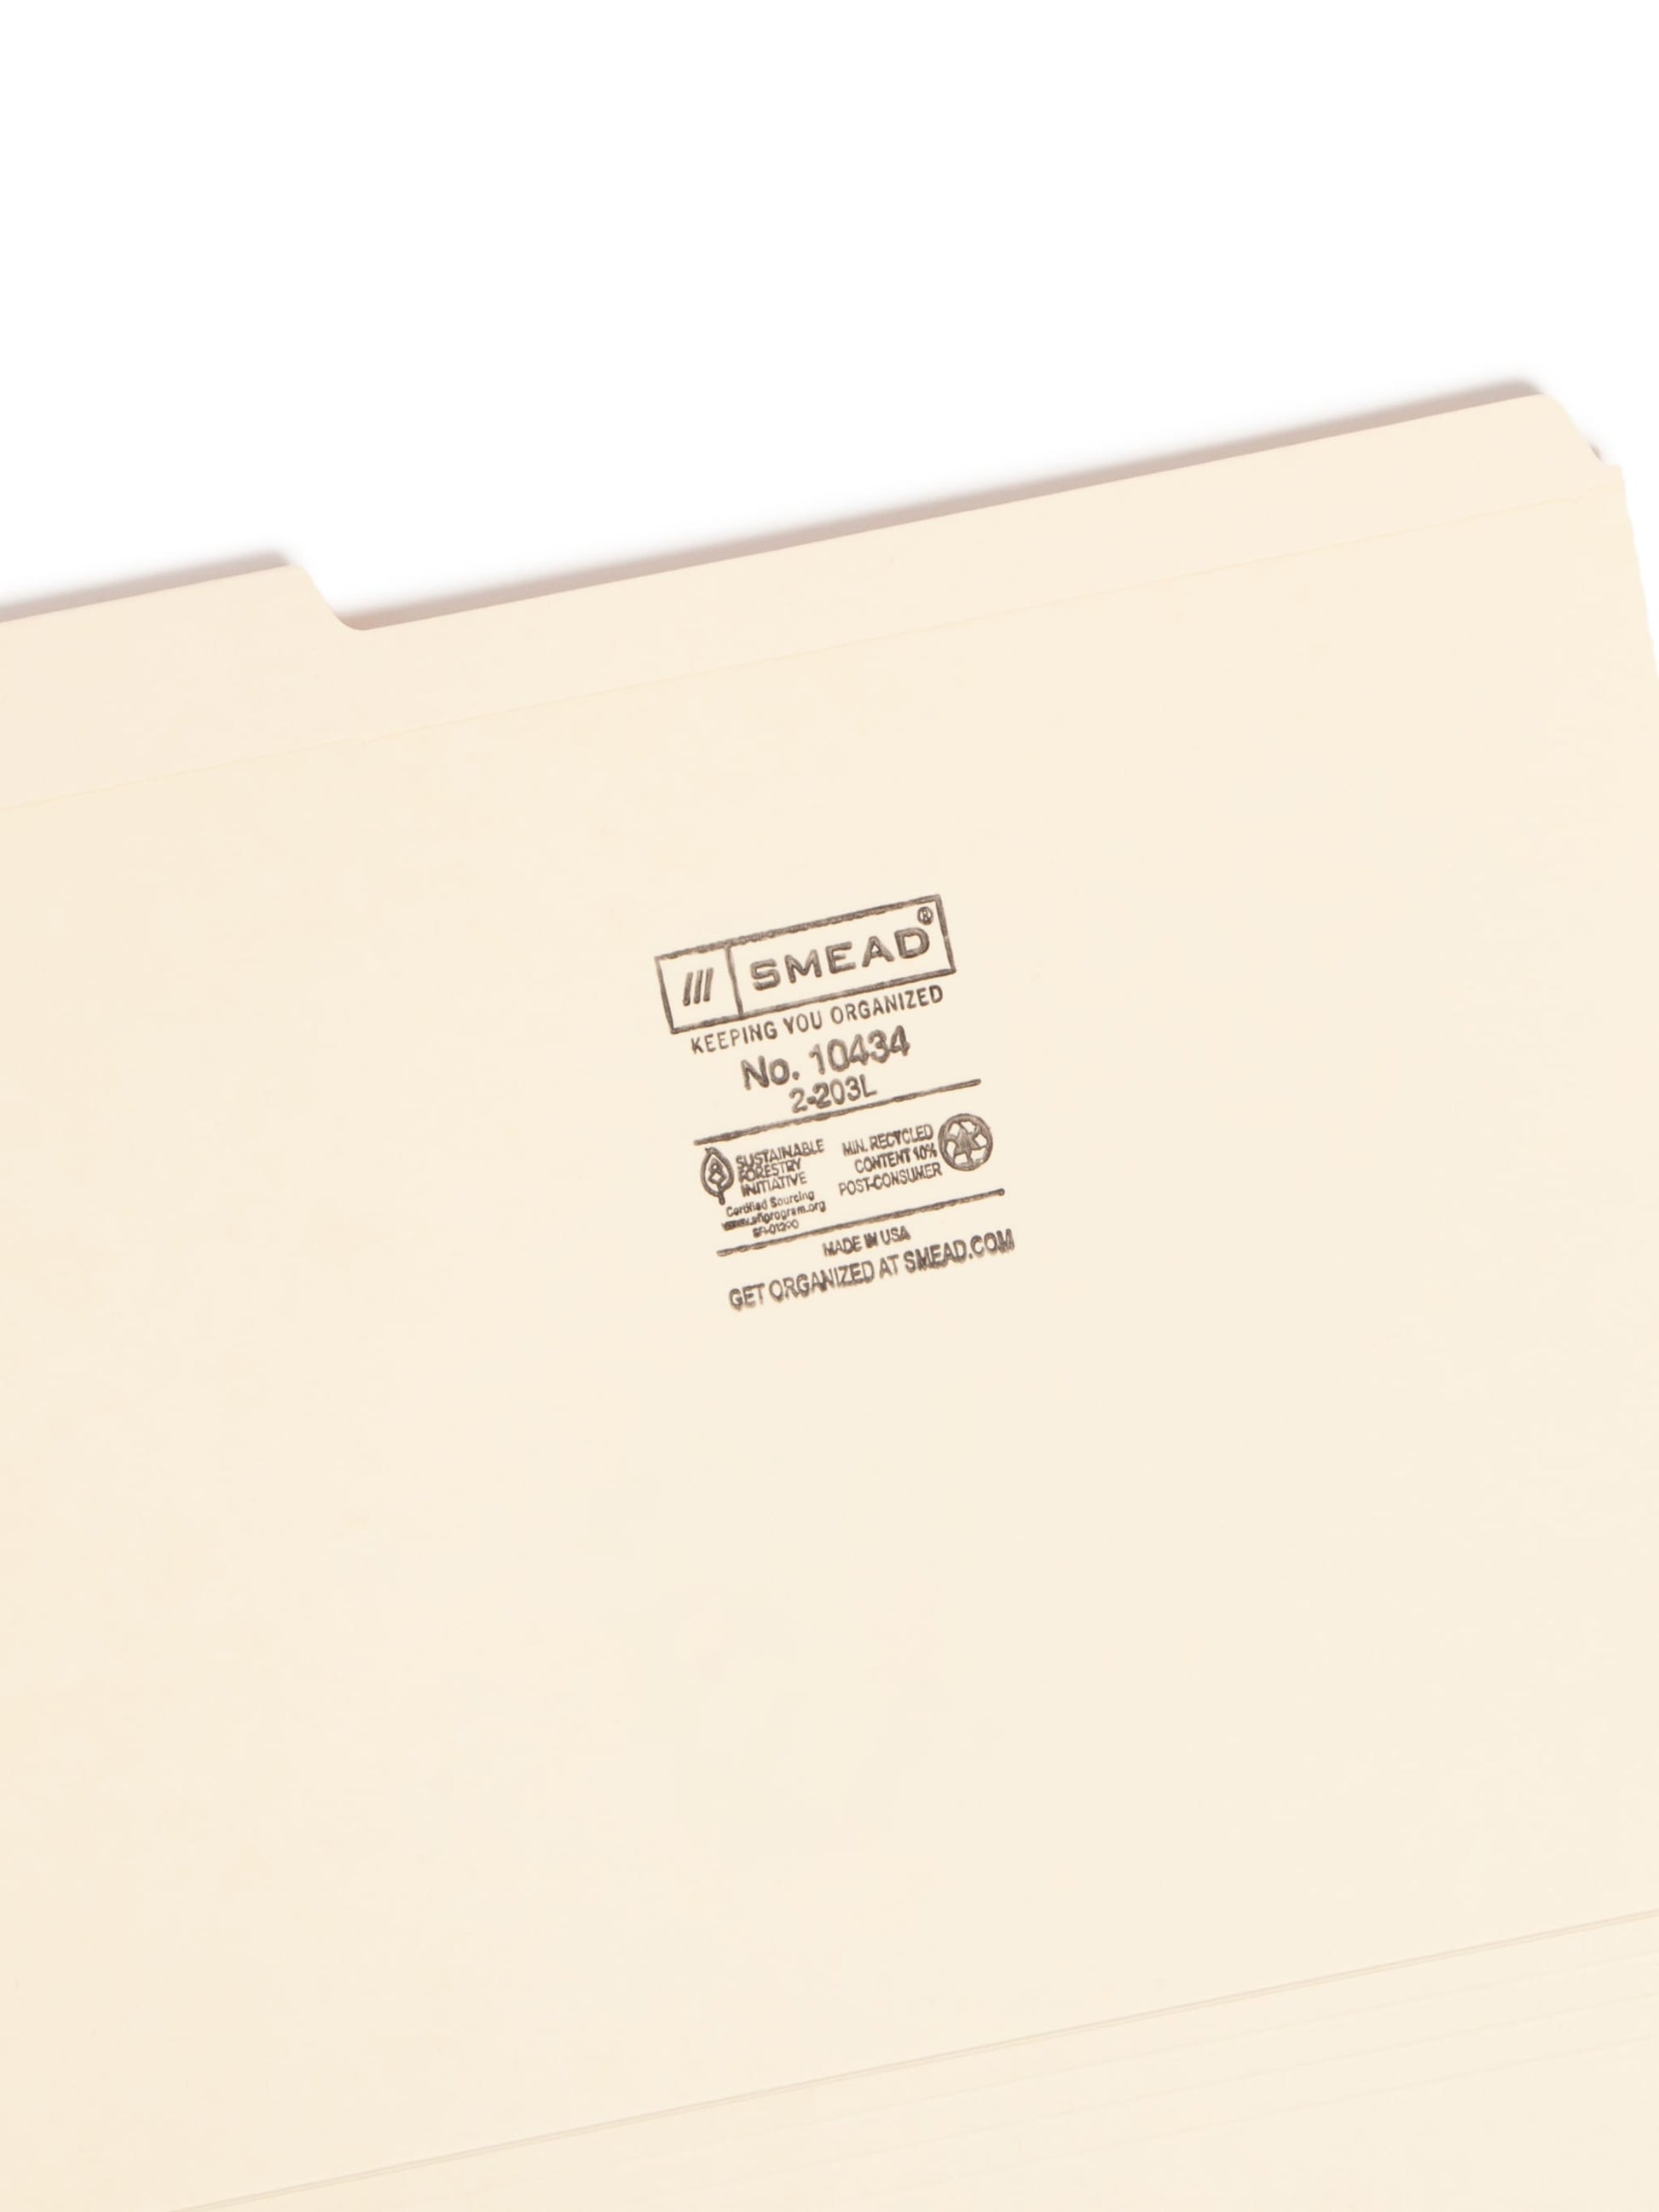 Heavy Duty Reinforced Tab File Folders, 1/3-Cut Tab, Manila Color, Letter Size, Set of 100, 086486104340